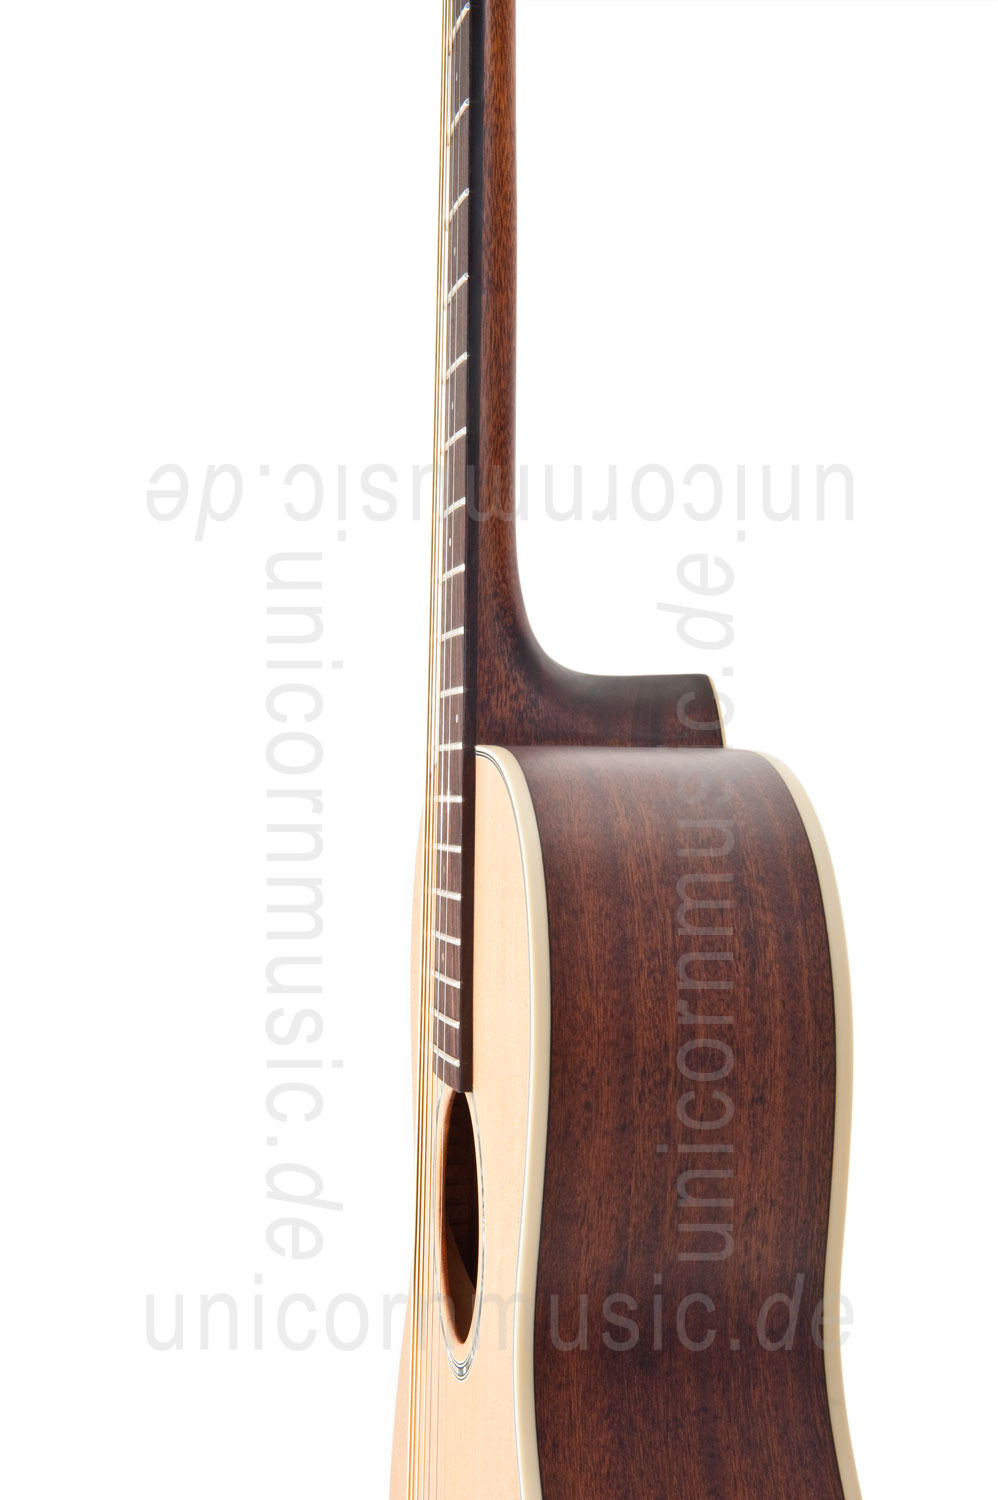 zur Artikelbeschreibung / Preis Western-Gitarre TANGLEWOOD TW73 - Parlour Modell - Sundance Series - massive Decke + Boden